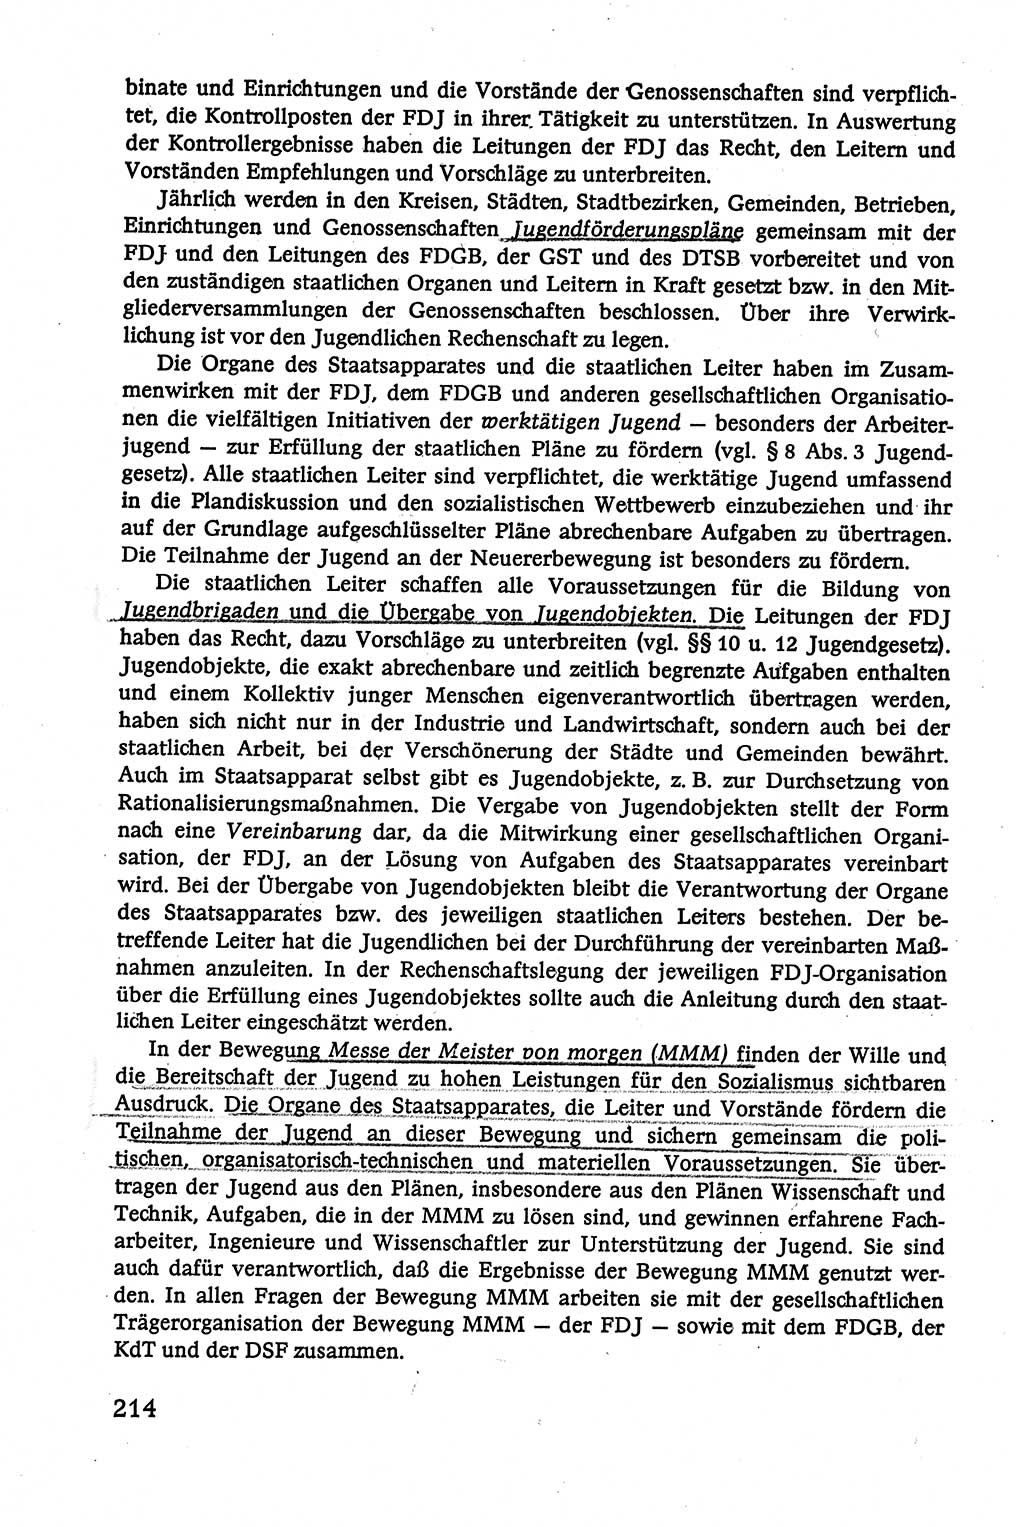 Verwaltungsrecht [Deutsche Demokratische Republik (DDR)], Lehrbuch 1979, Seite 214 (Verw.-R. DDR Lb. 1979, S. 214)